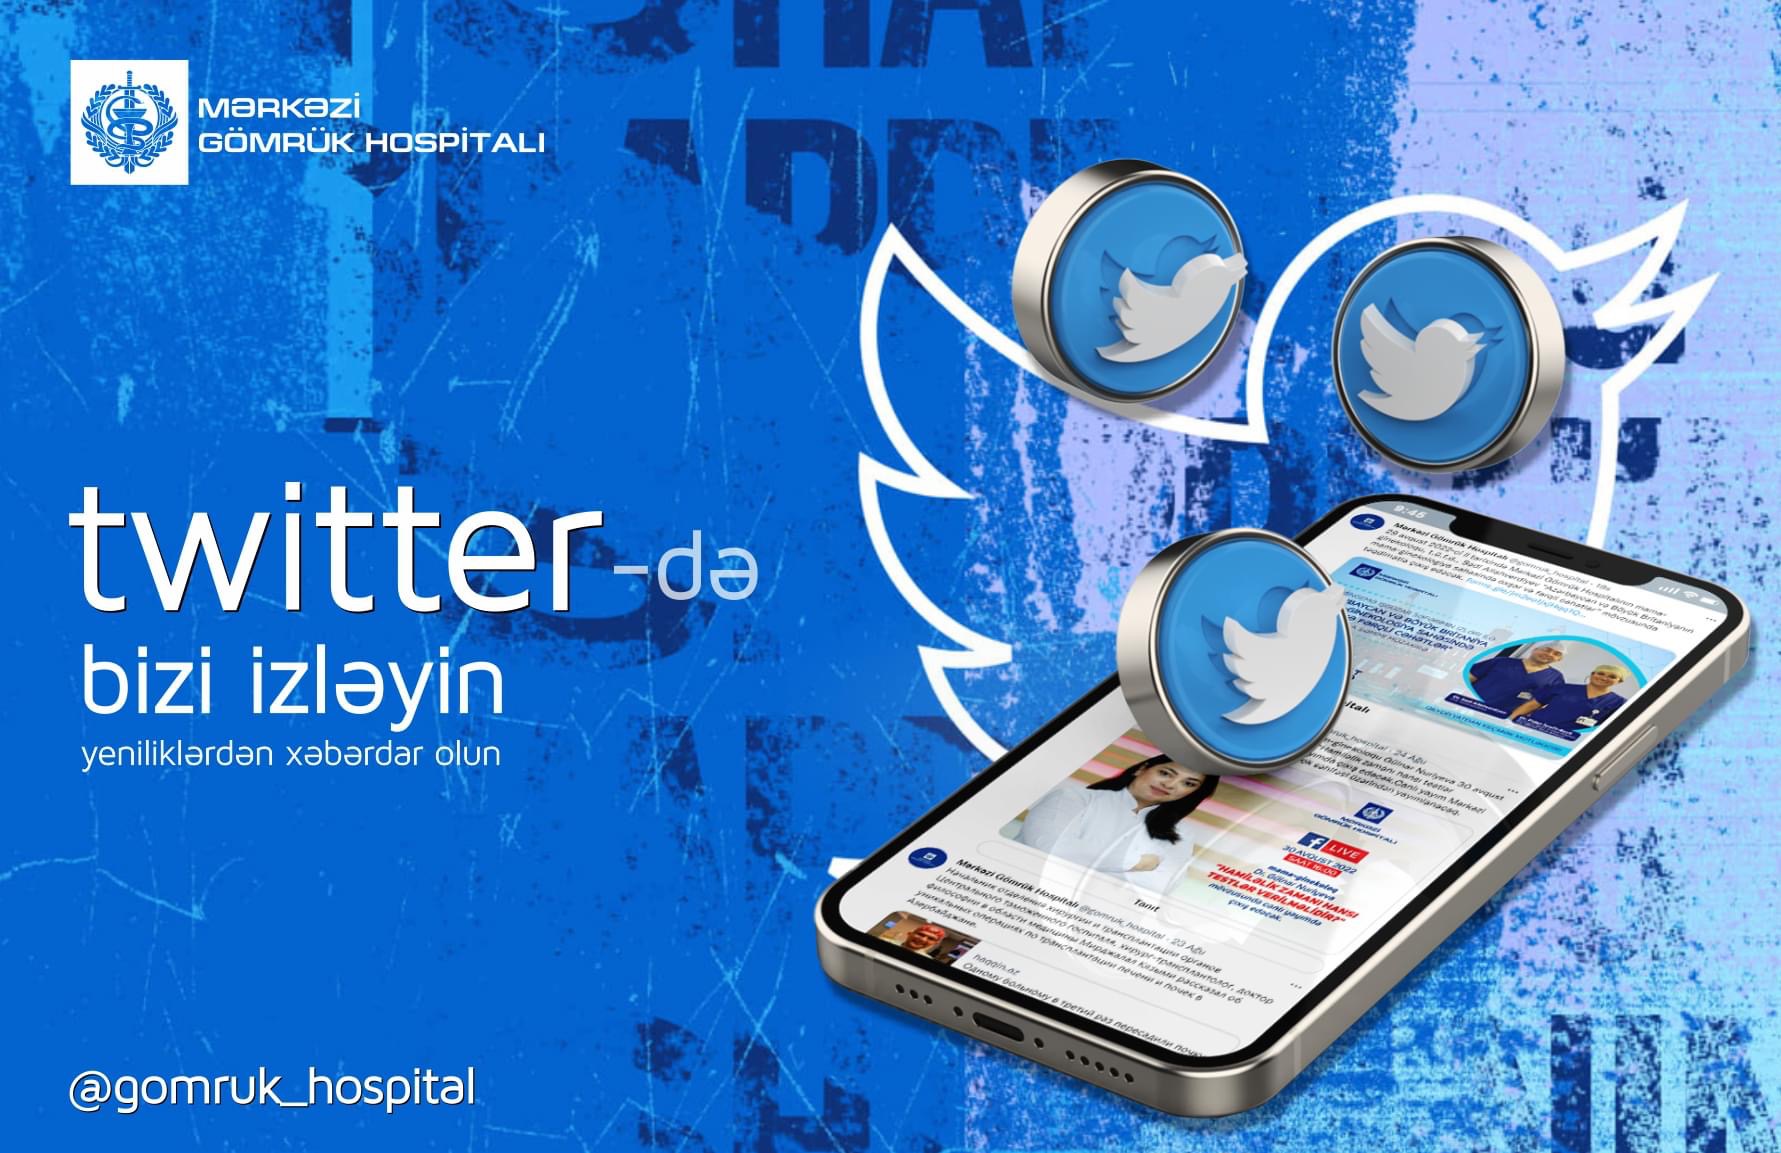 Mərkəzi Gömrük Hospitalının “Twitter” səhifəsi istifadəyə verilib